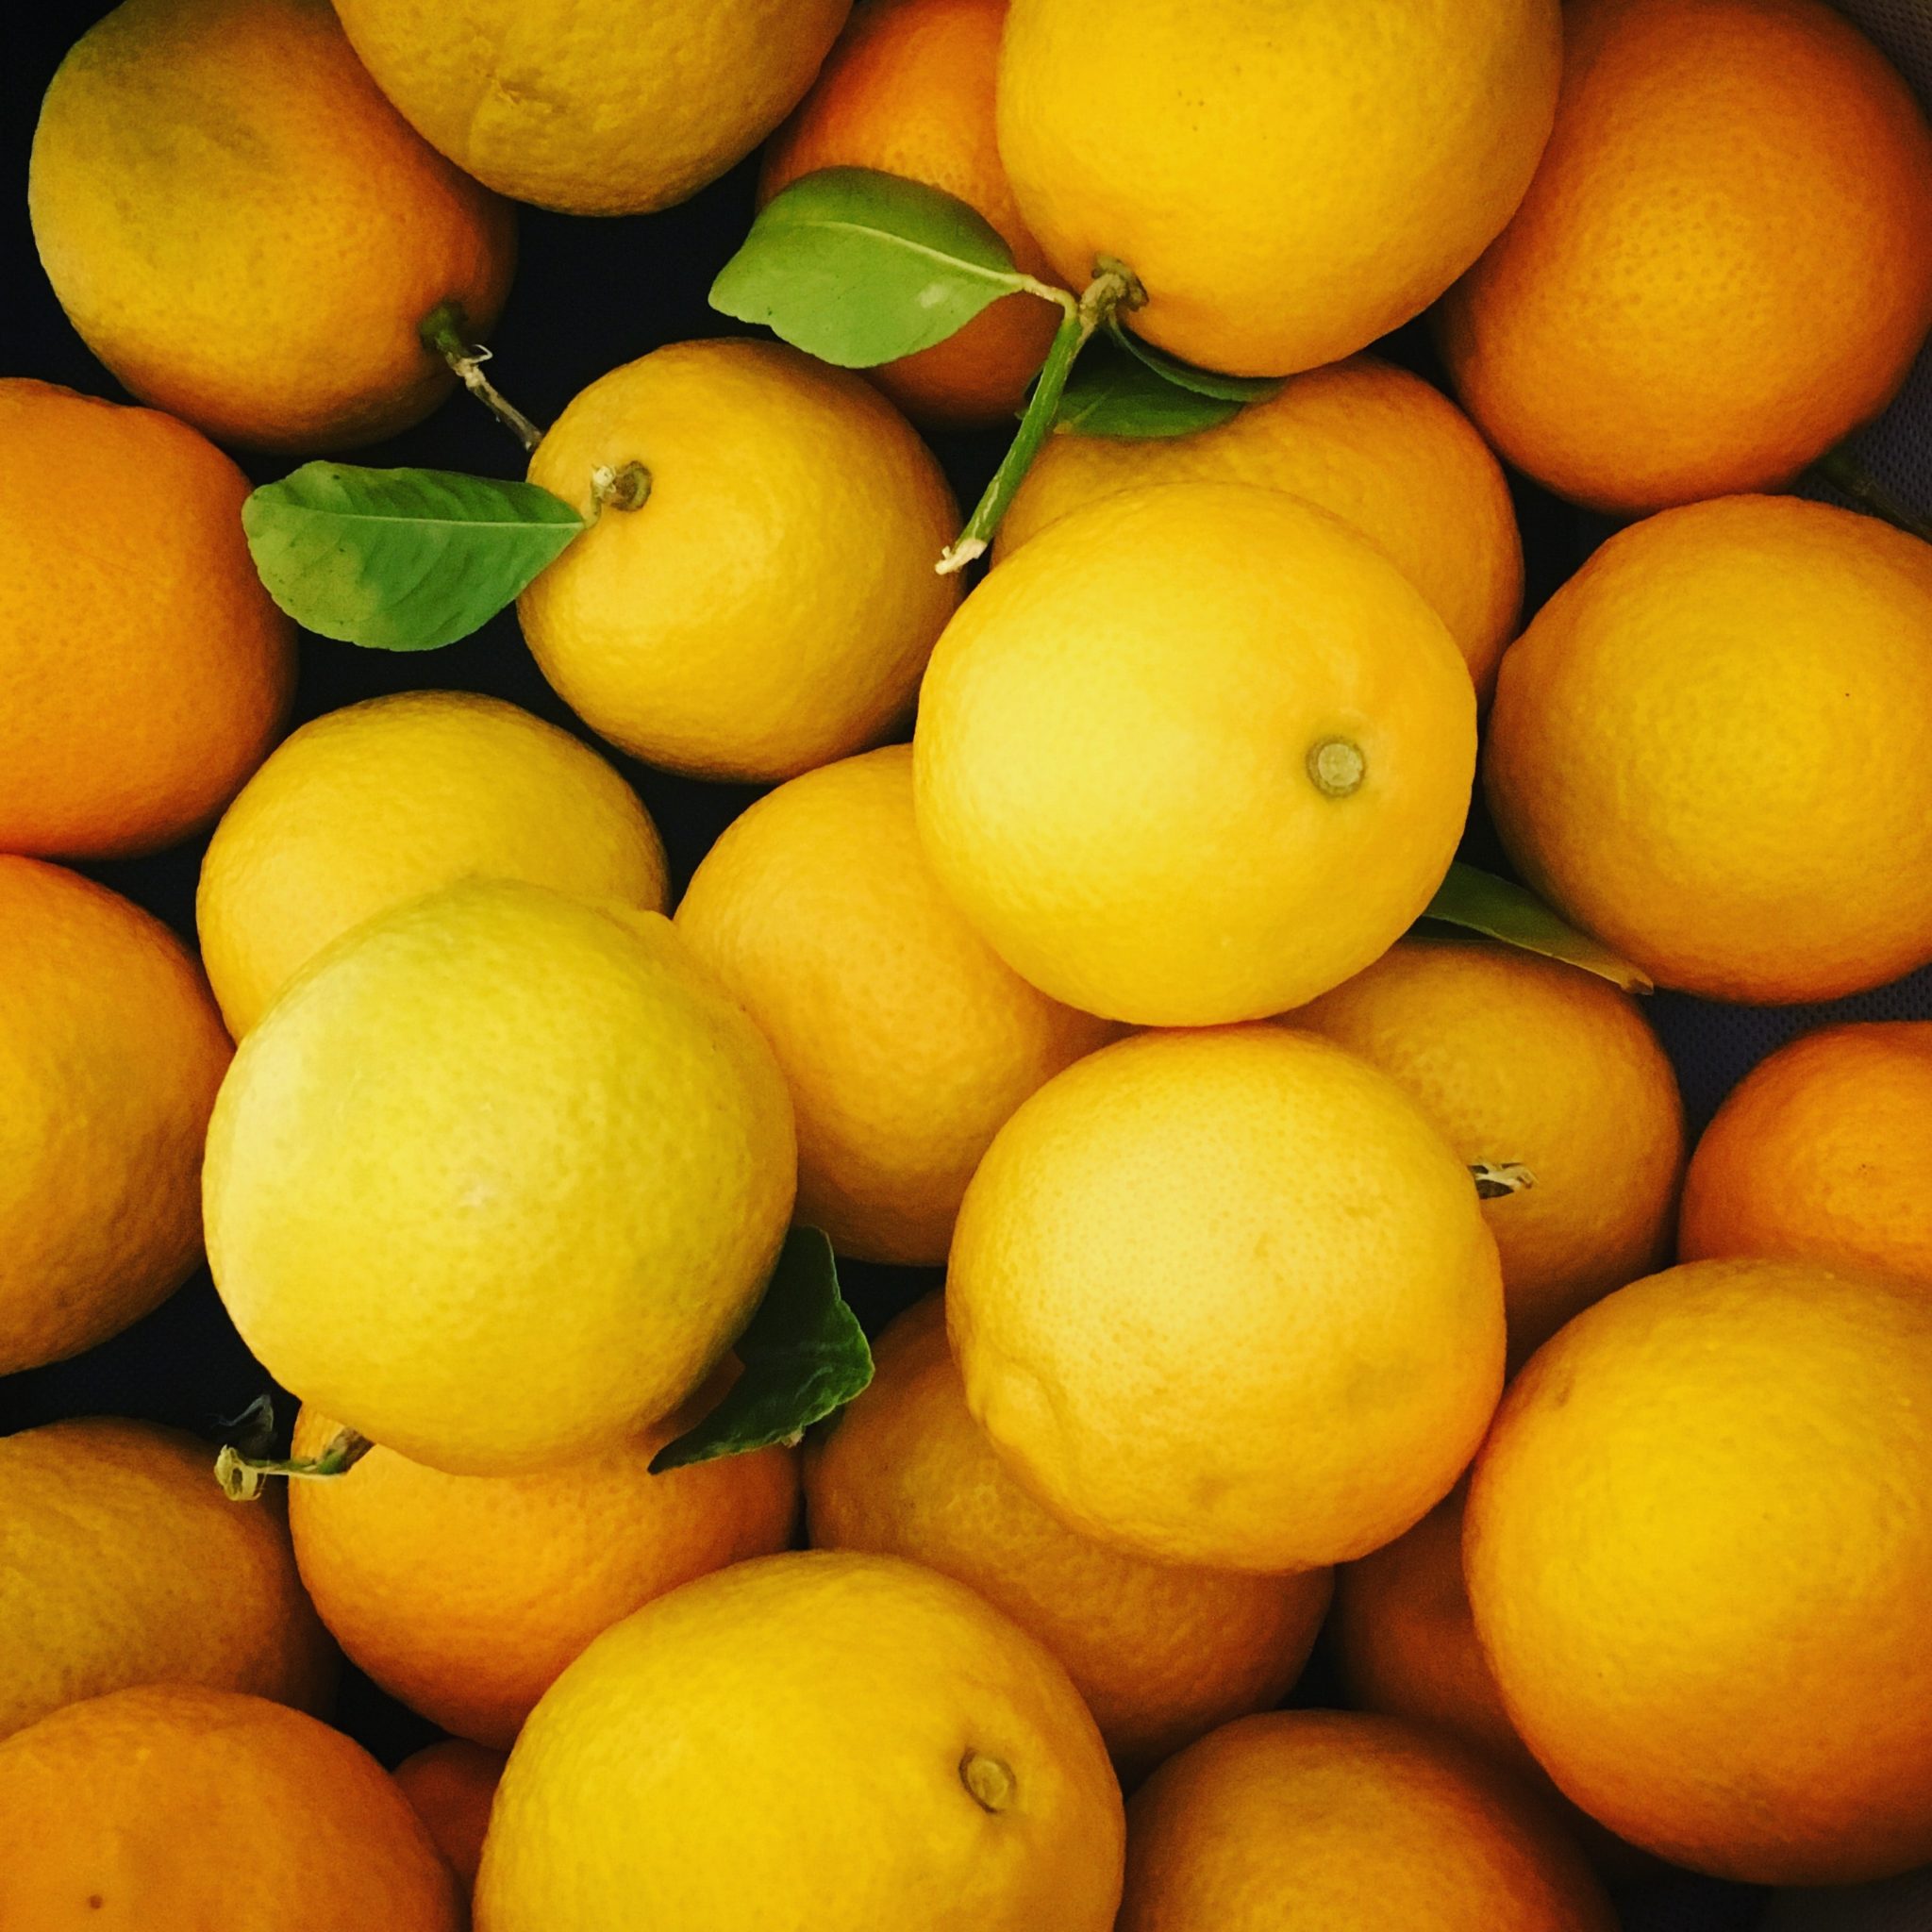 Carbohydrates in citrus